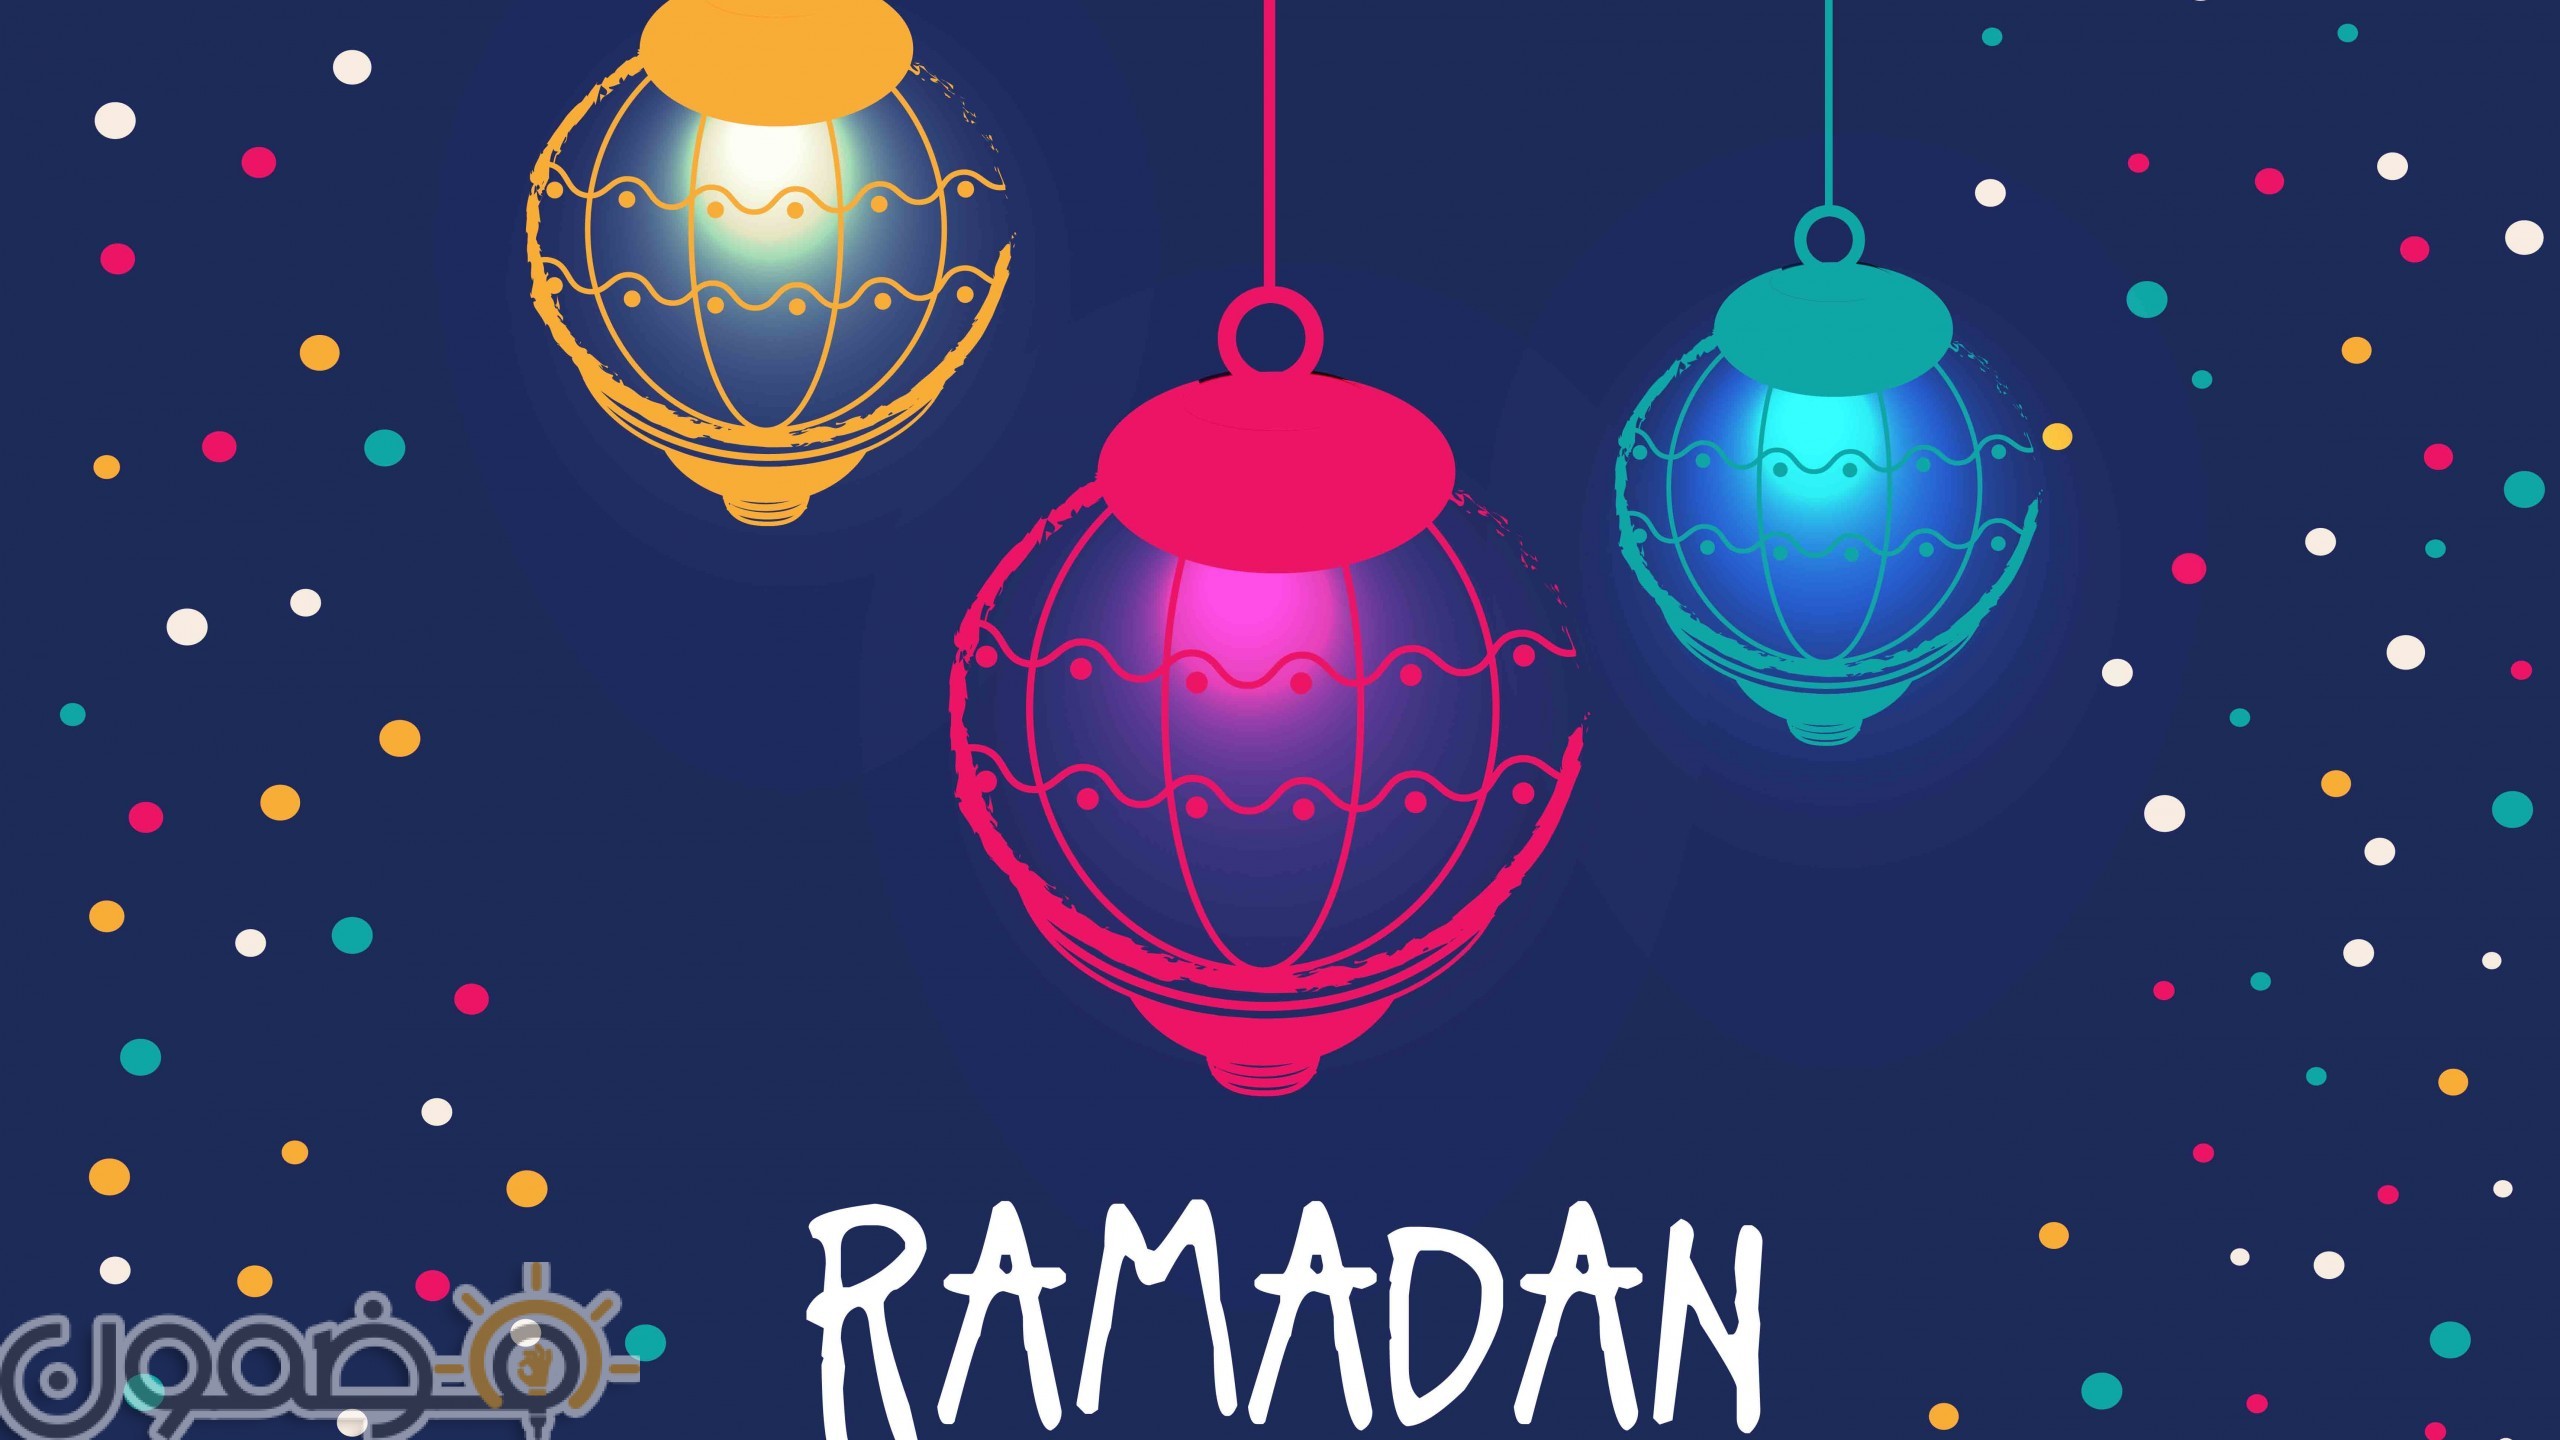 خلفيات رمضان للتصميم 3 خلفيات رمضان للتصميم اجمل صور رمضانية